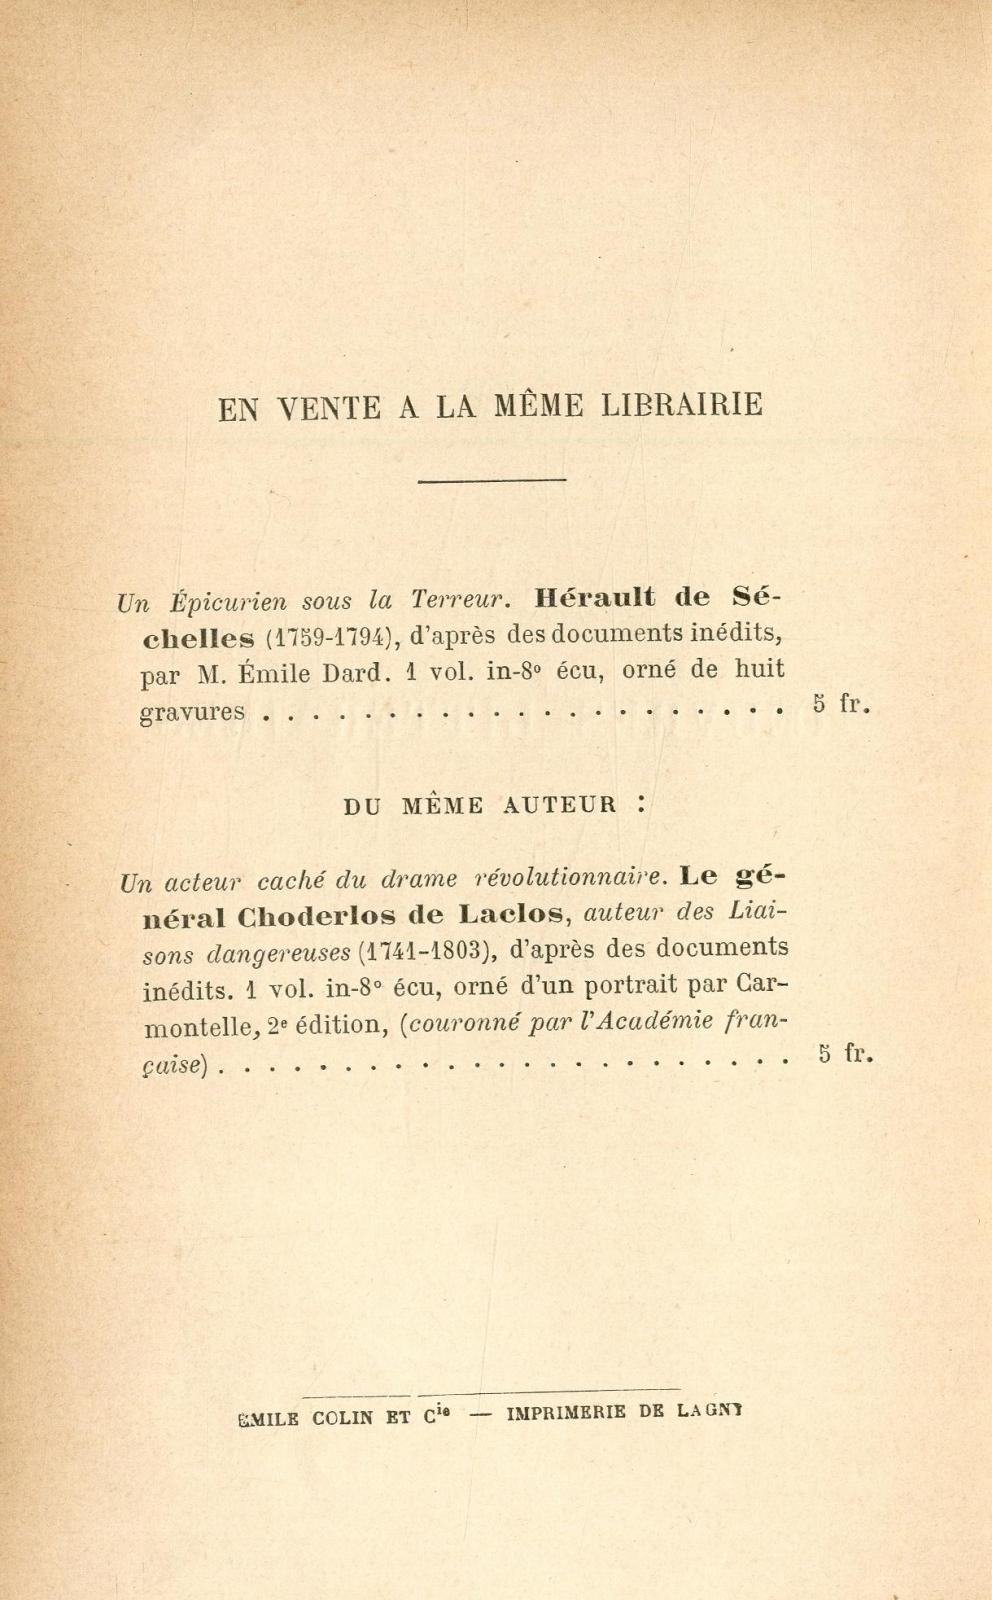 Oeuvres littéraires : ouvrage orné d'un portrait / Hérault de Séchelles ; publiées avec une préface et des notes par É. Dard